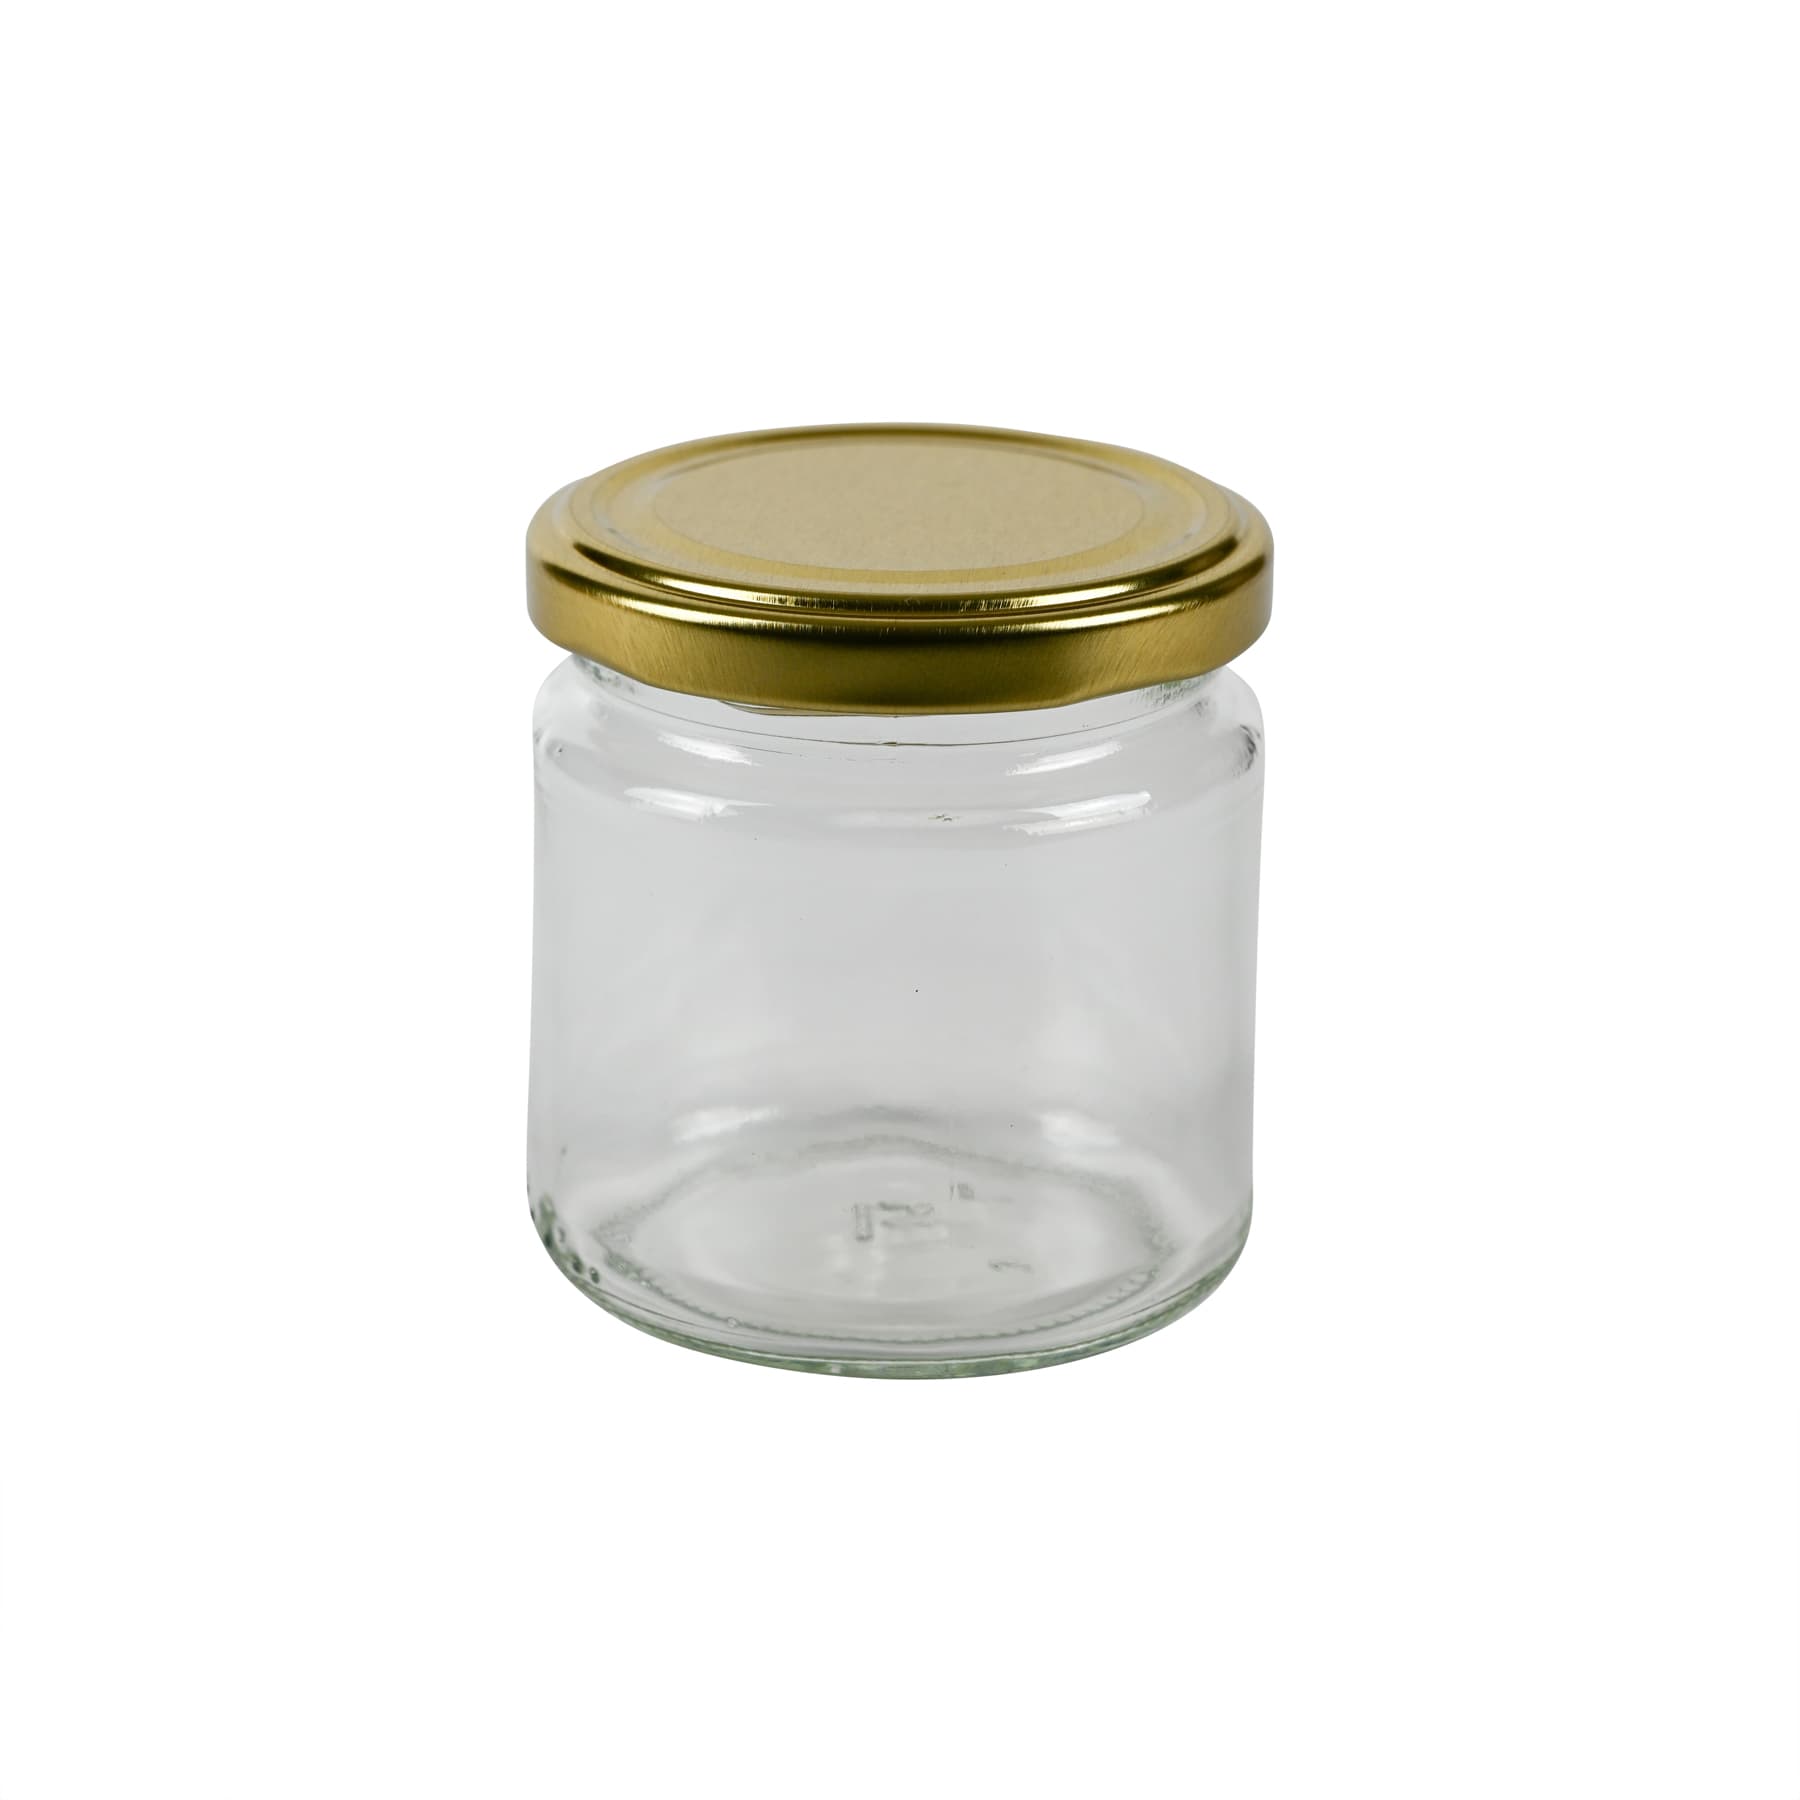 Rundglas 250 g Weck859  (212 ml), mit T0 Deckel gold 66mm lose nur Selbstabholung